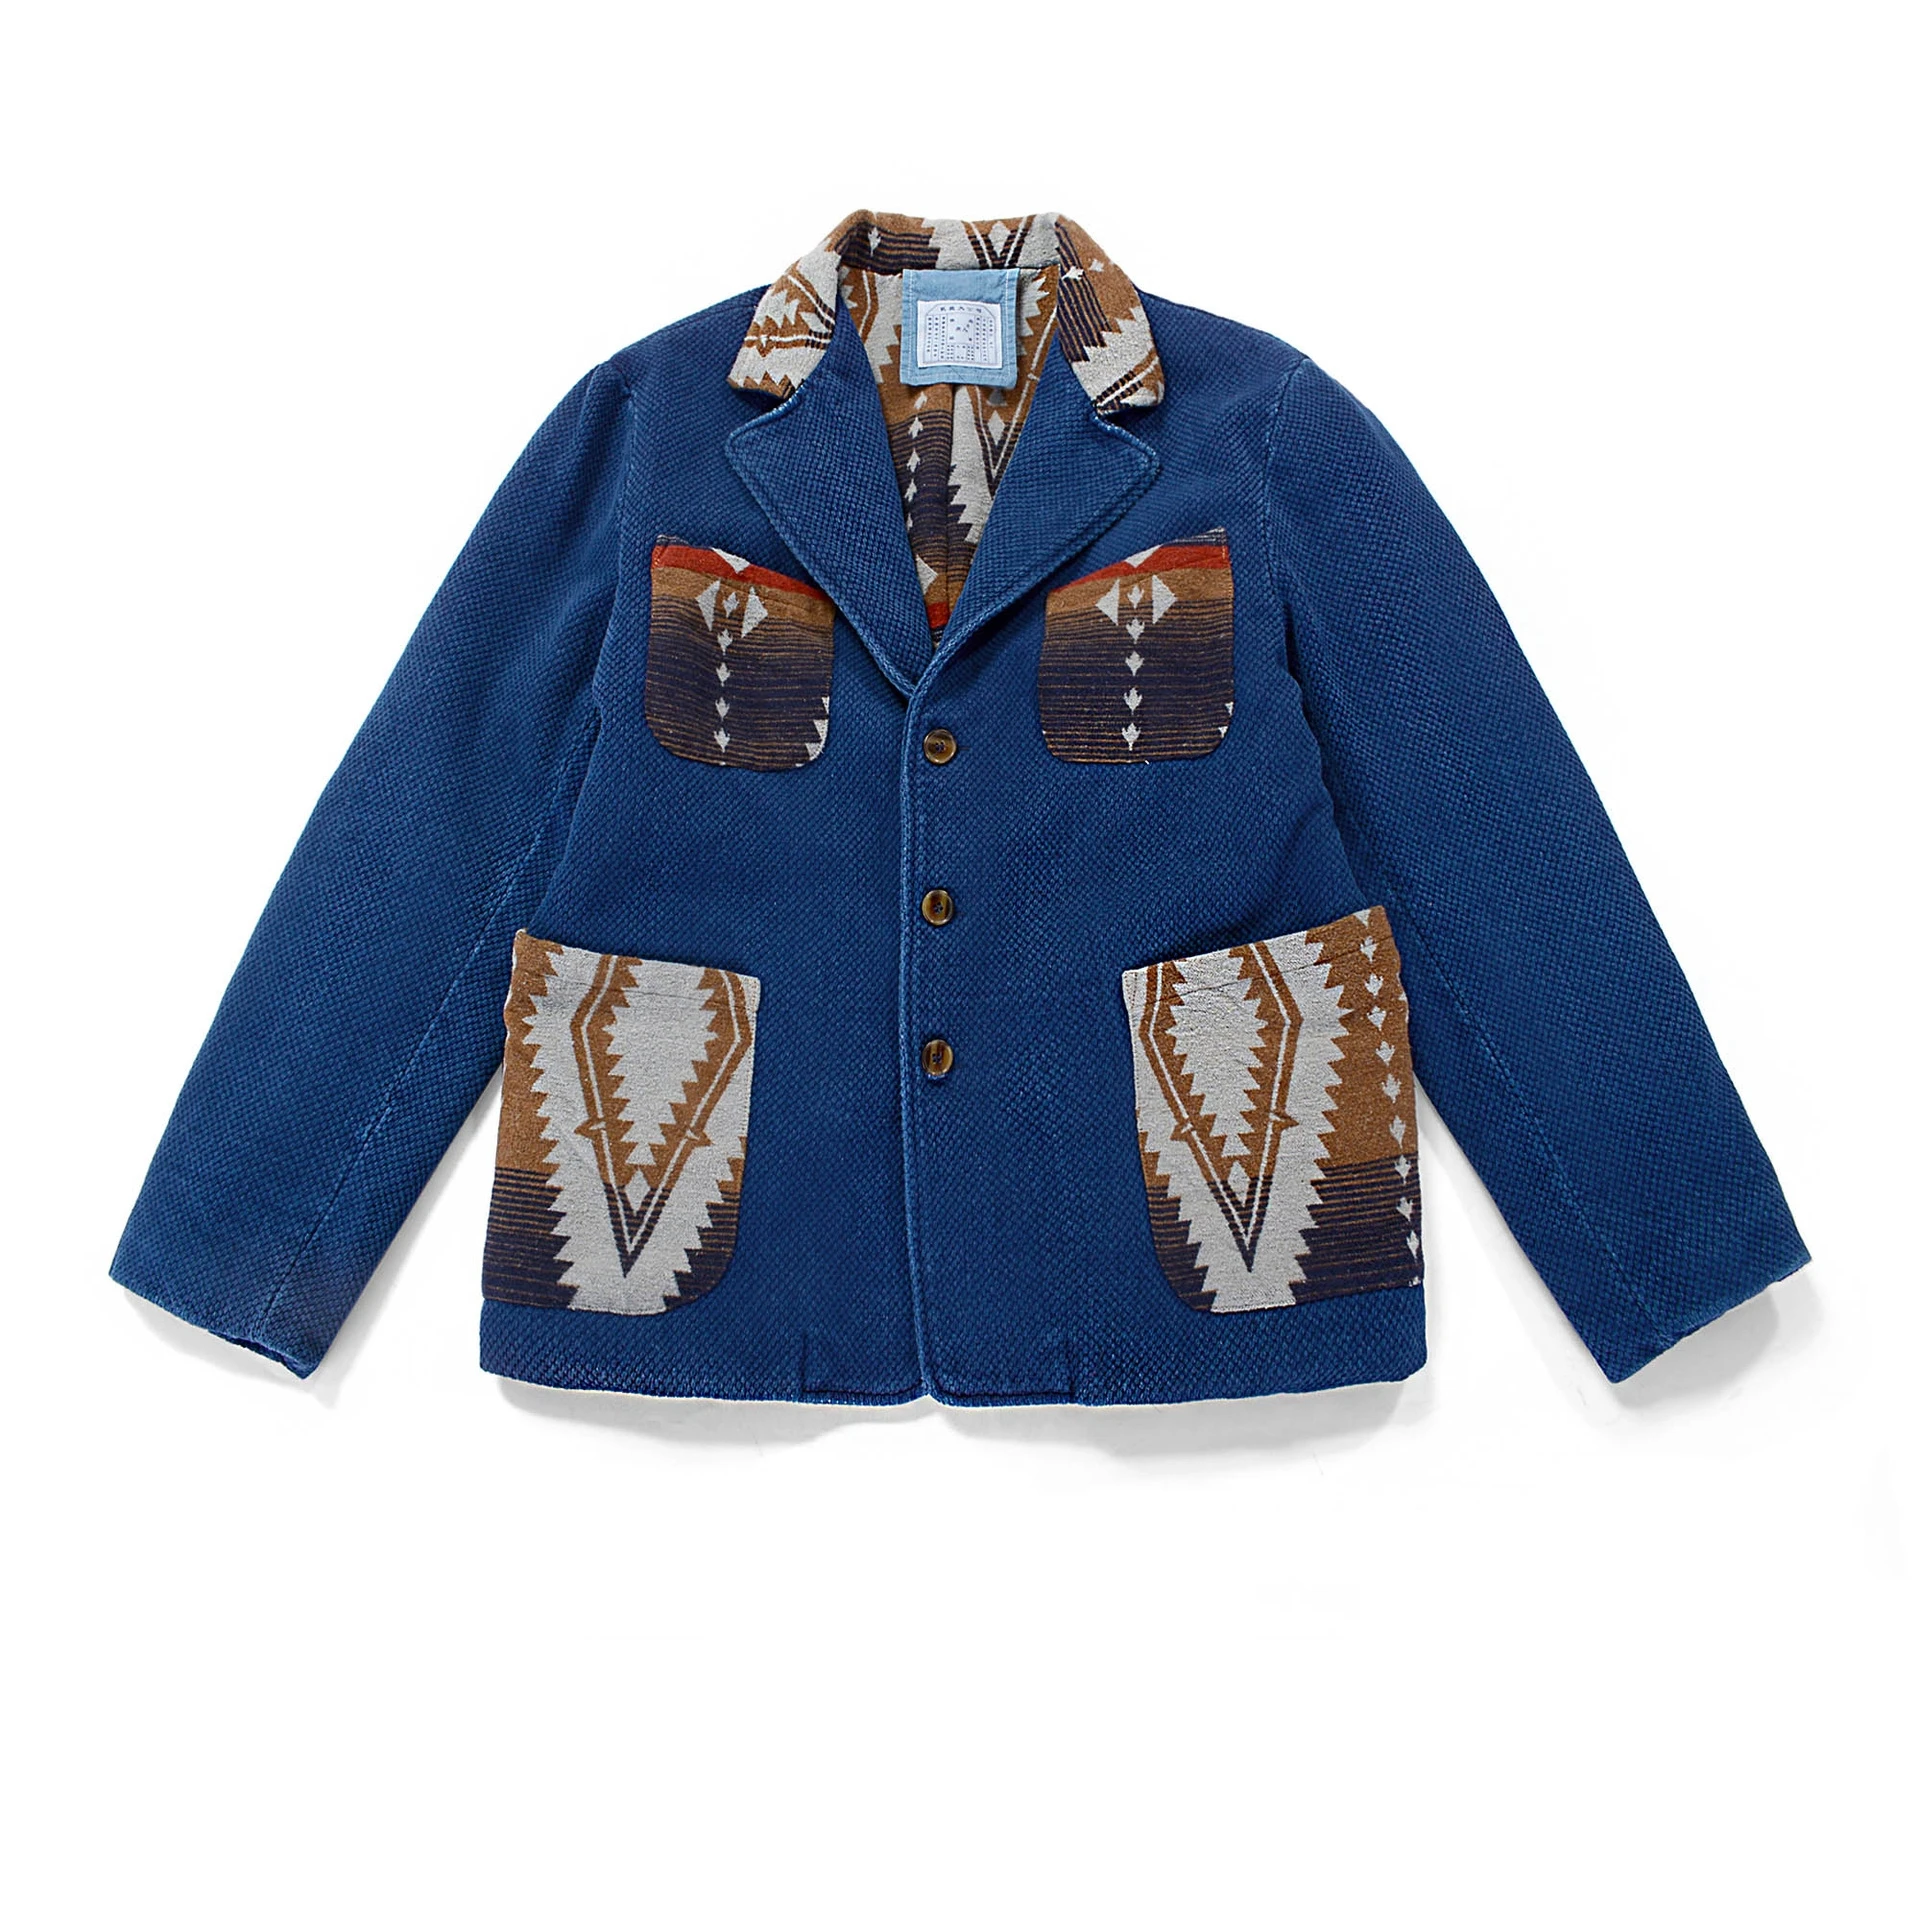 

Мужская куртка Sashiko, плотная теплая рабочая одежда стандартного кроя в западном стиле Навахо